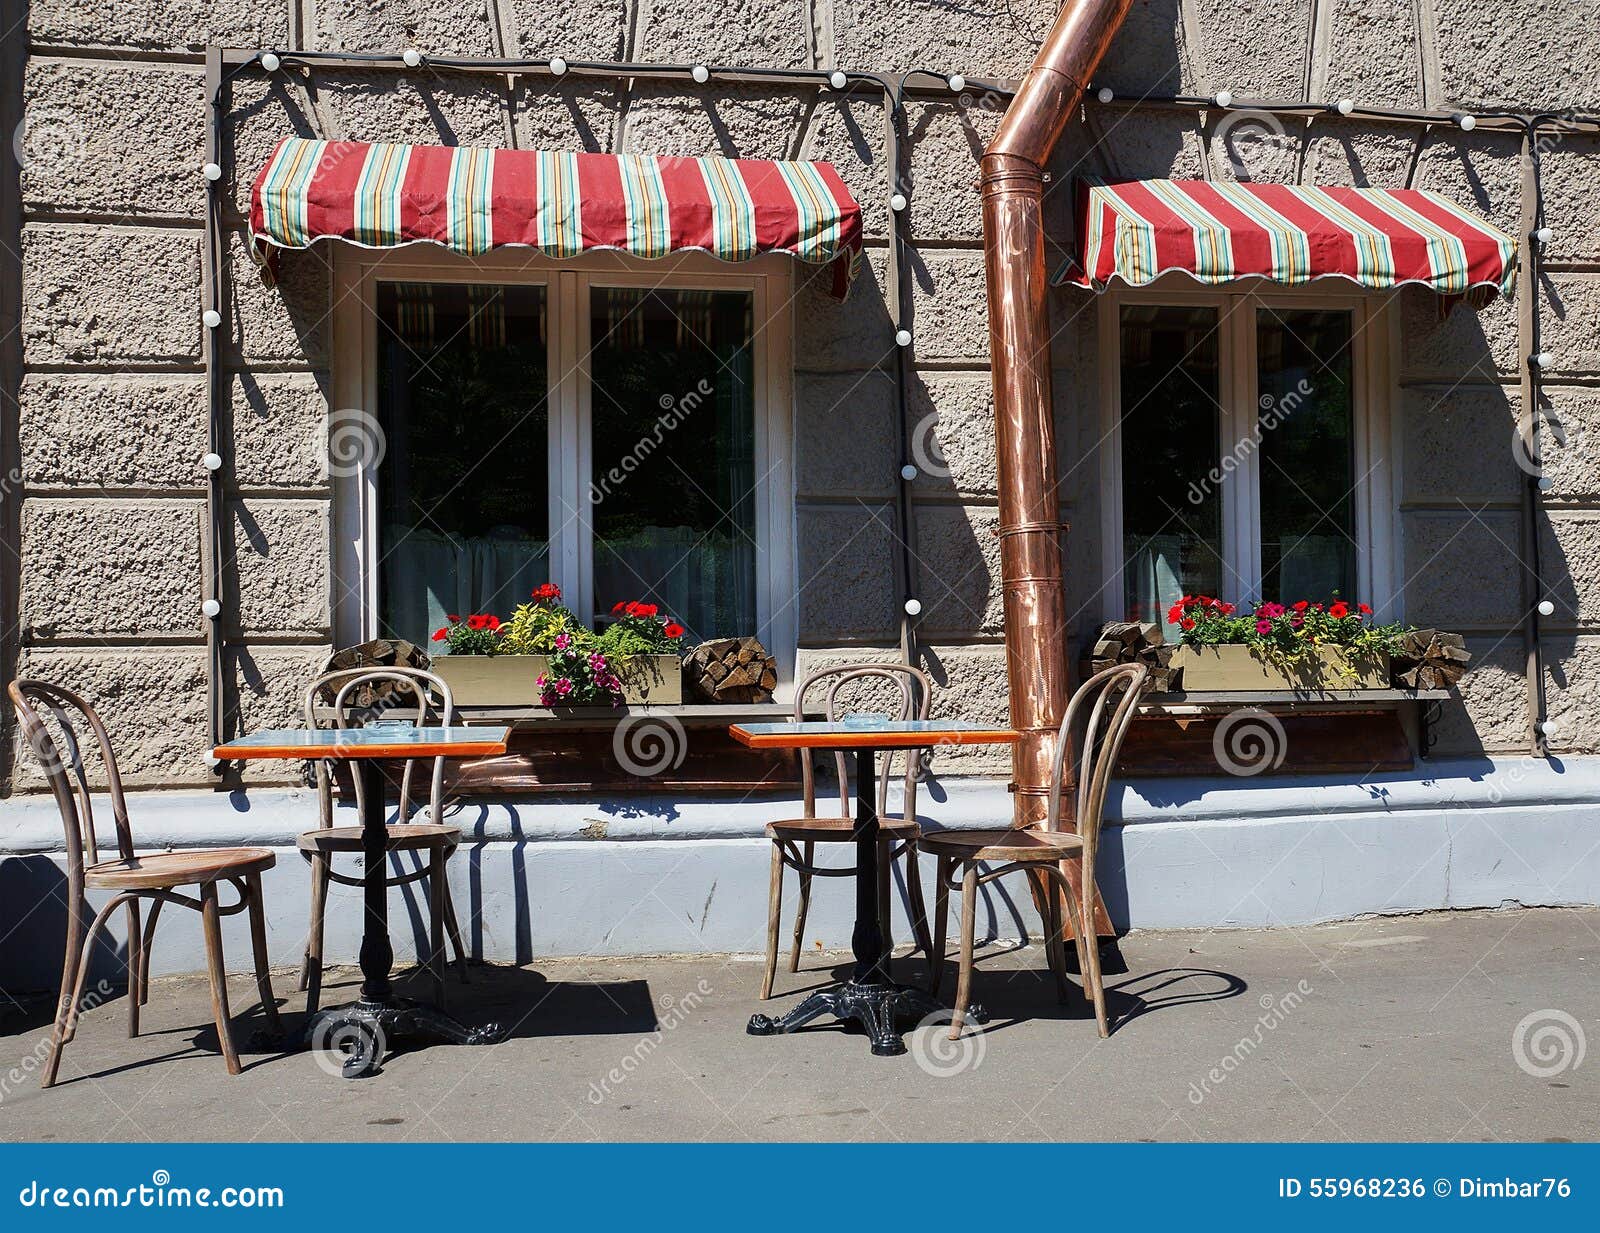 Столики на улице кафе. Кафе со столиками на улице. Столики на улице в кофейне. Французский стол на улице. Улица возле кафе.